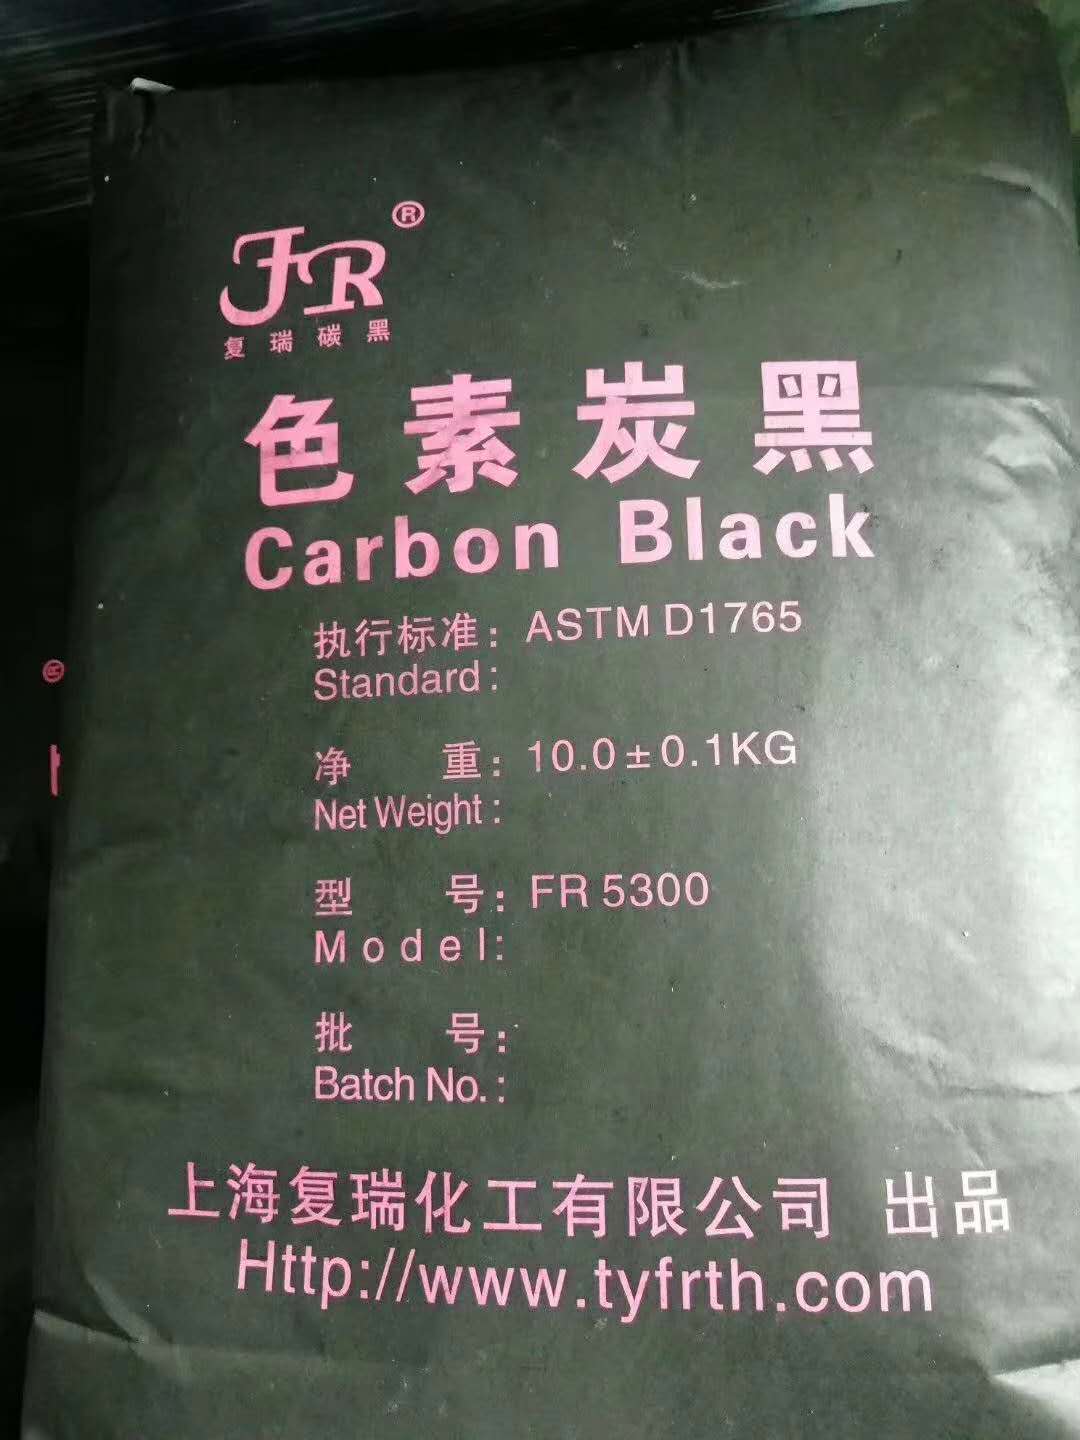 水性胶用炭黑 丙稀酸密封胶用炭黑 复瑞炭黑 提供样品